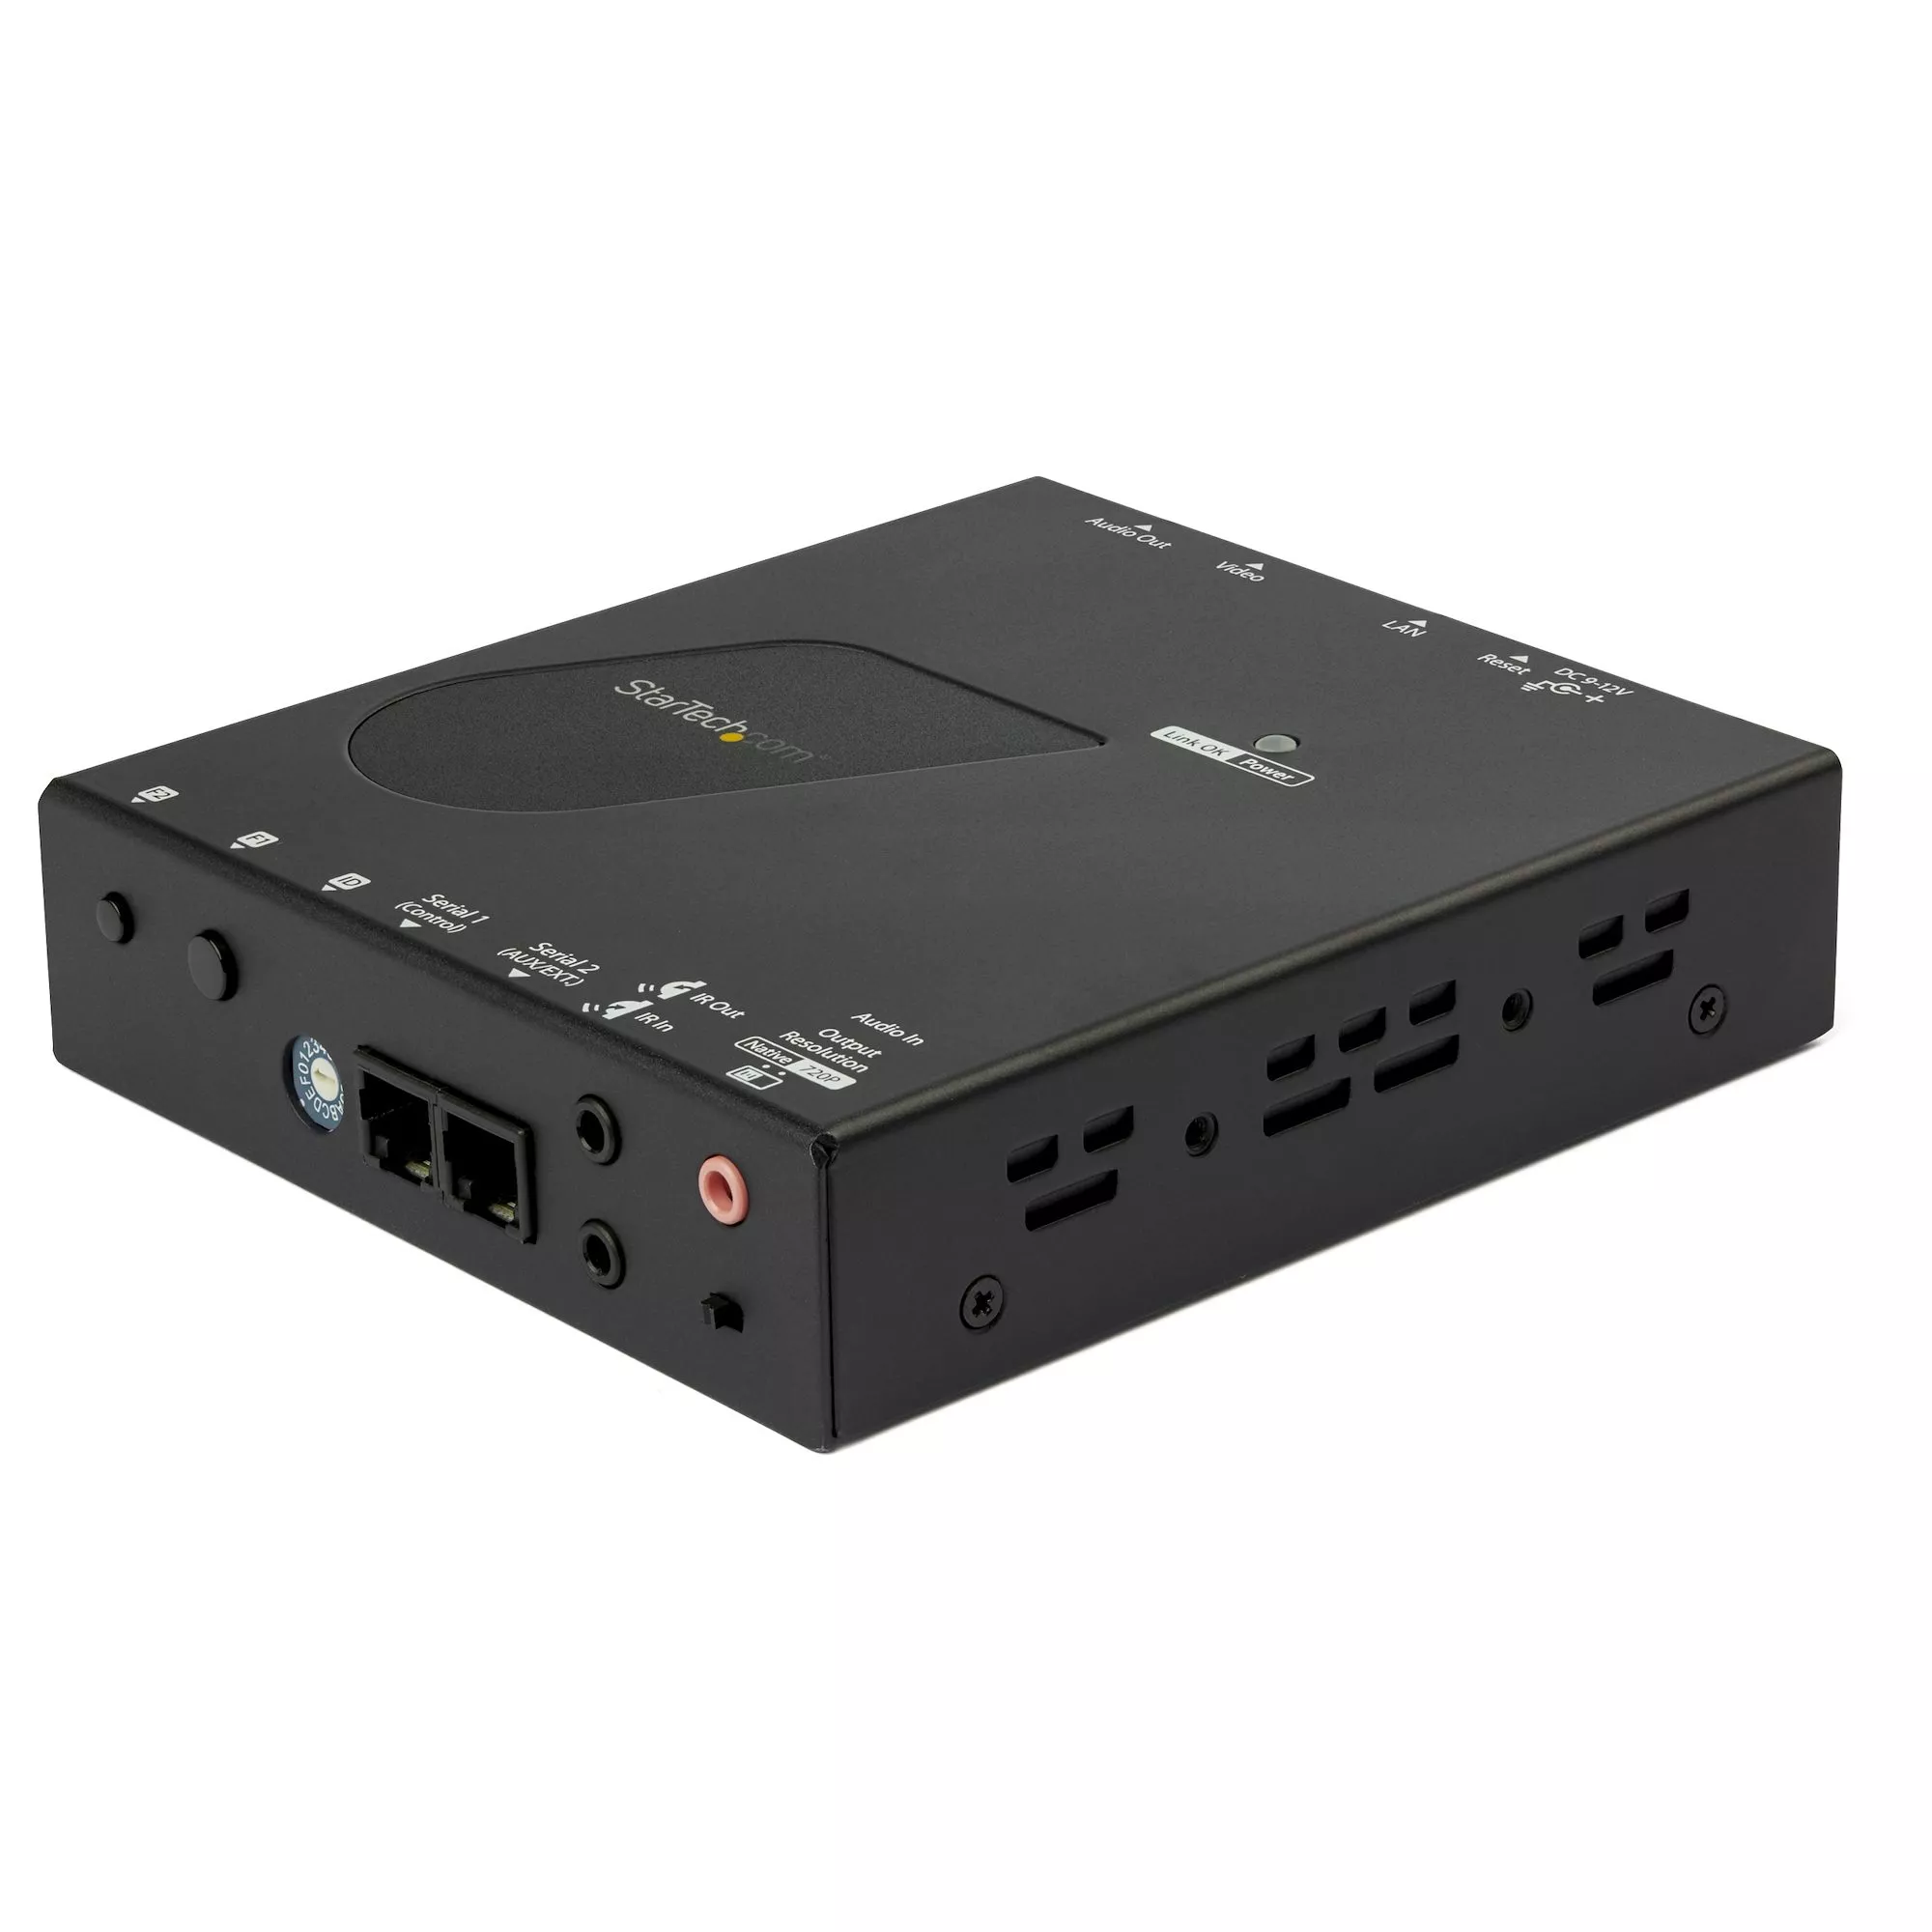 Revendeur officiel StarTech.com Récepteur HDMI sur IP pour kit